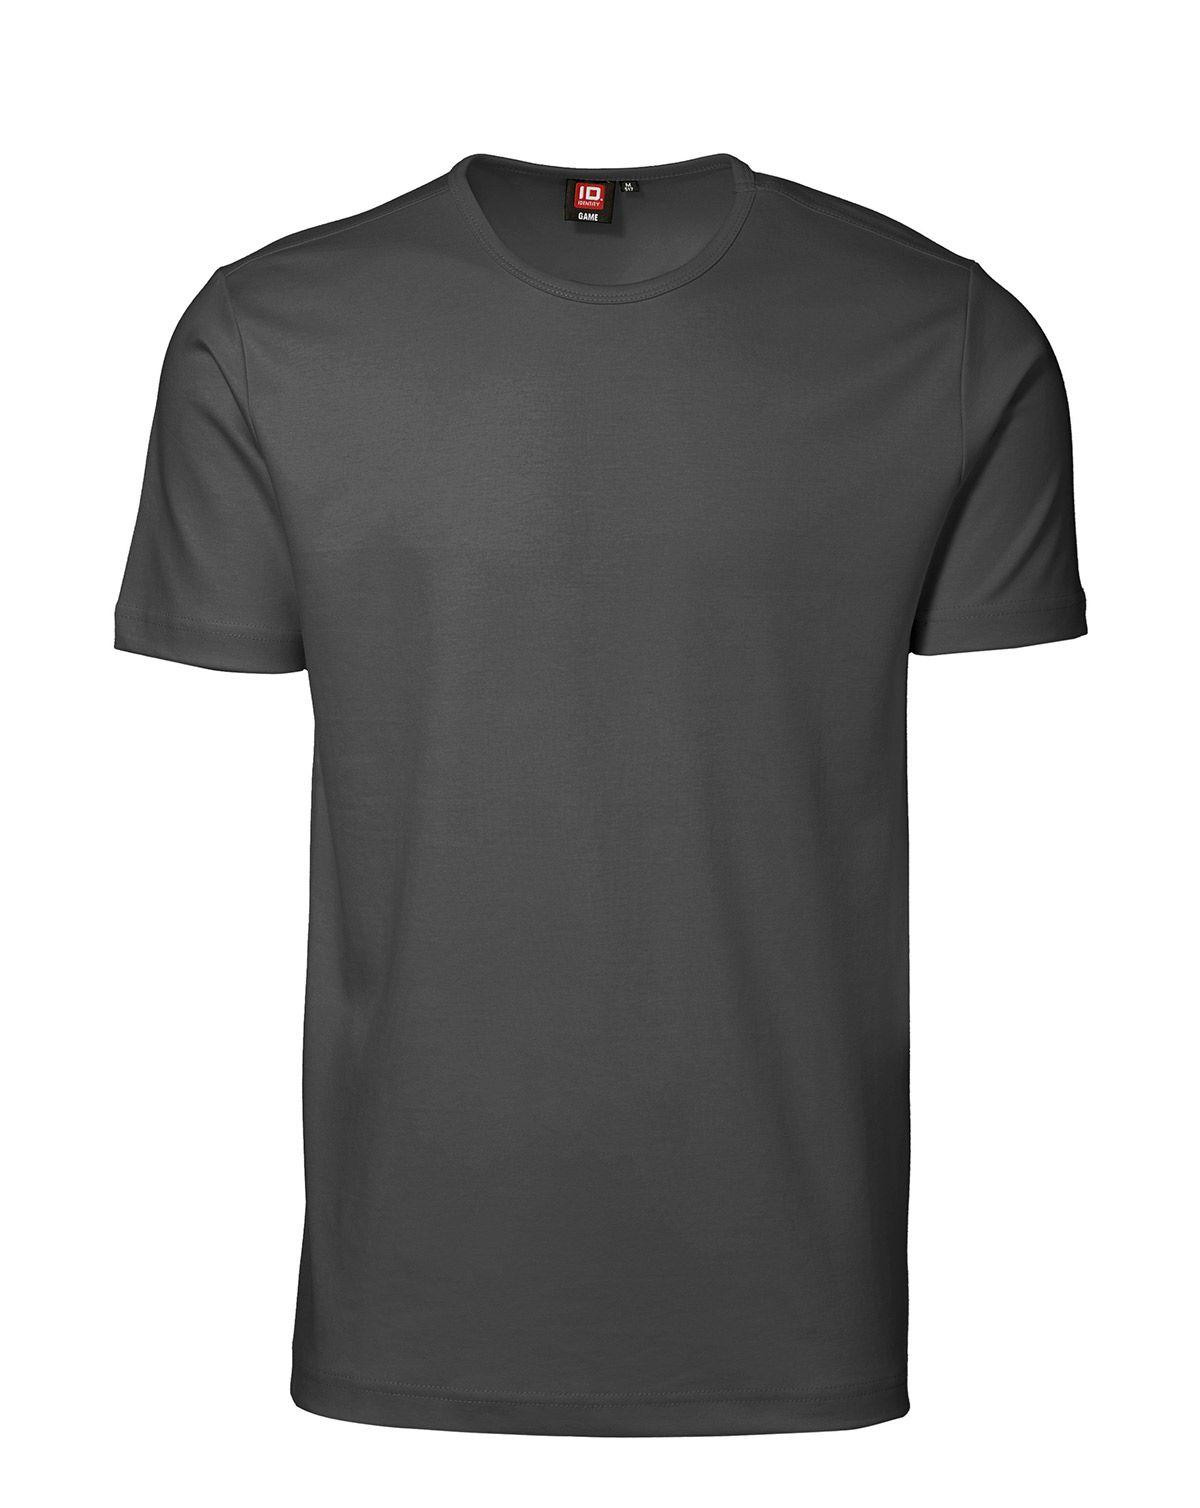 ID Interlock T-shirt (Charcoal, XL)